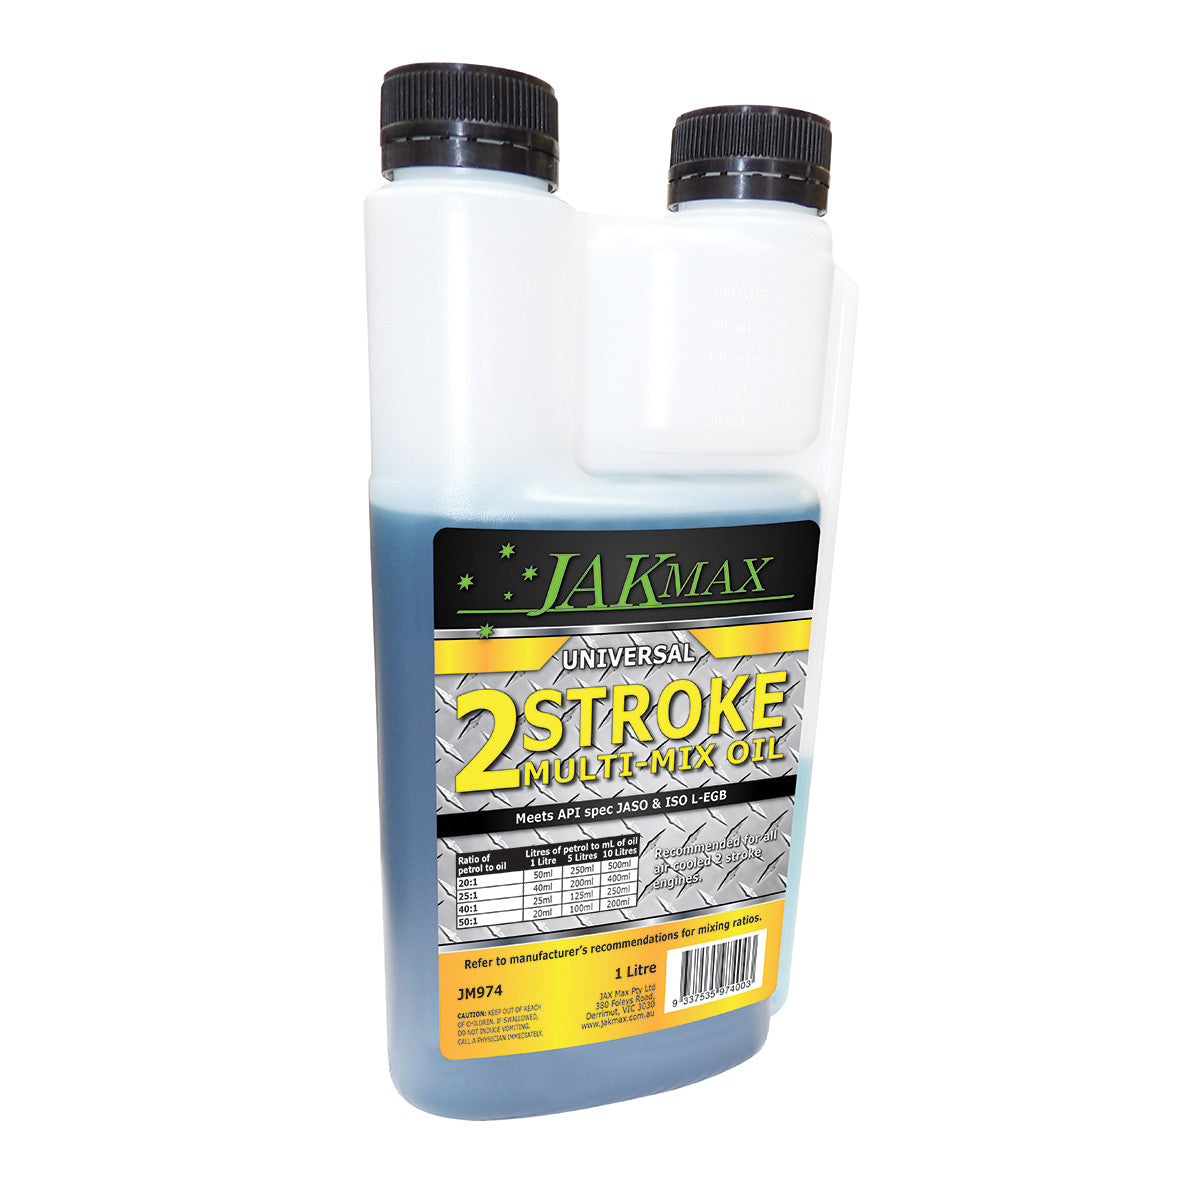 JakMax 2-Stroke Universal Multi-Mix Oil 1L